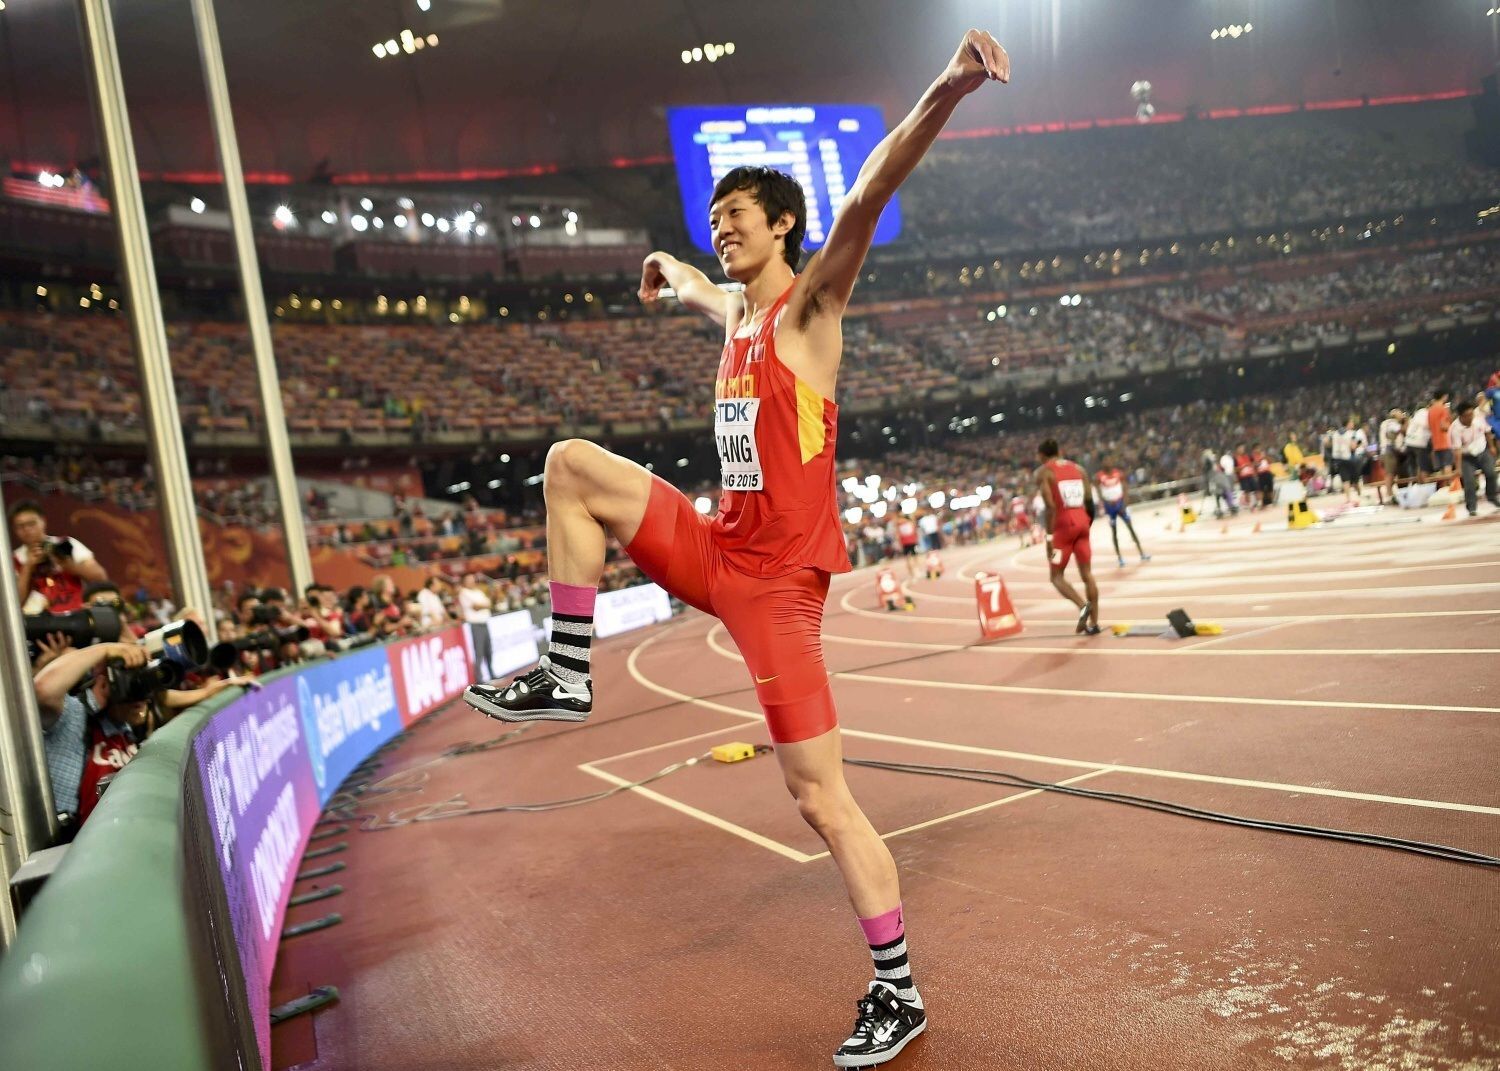 MS v atletice 2015: Čang Kuo-wej, výška